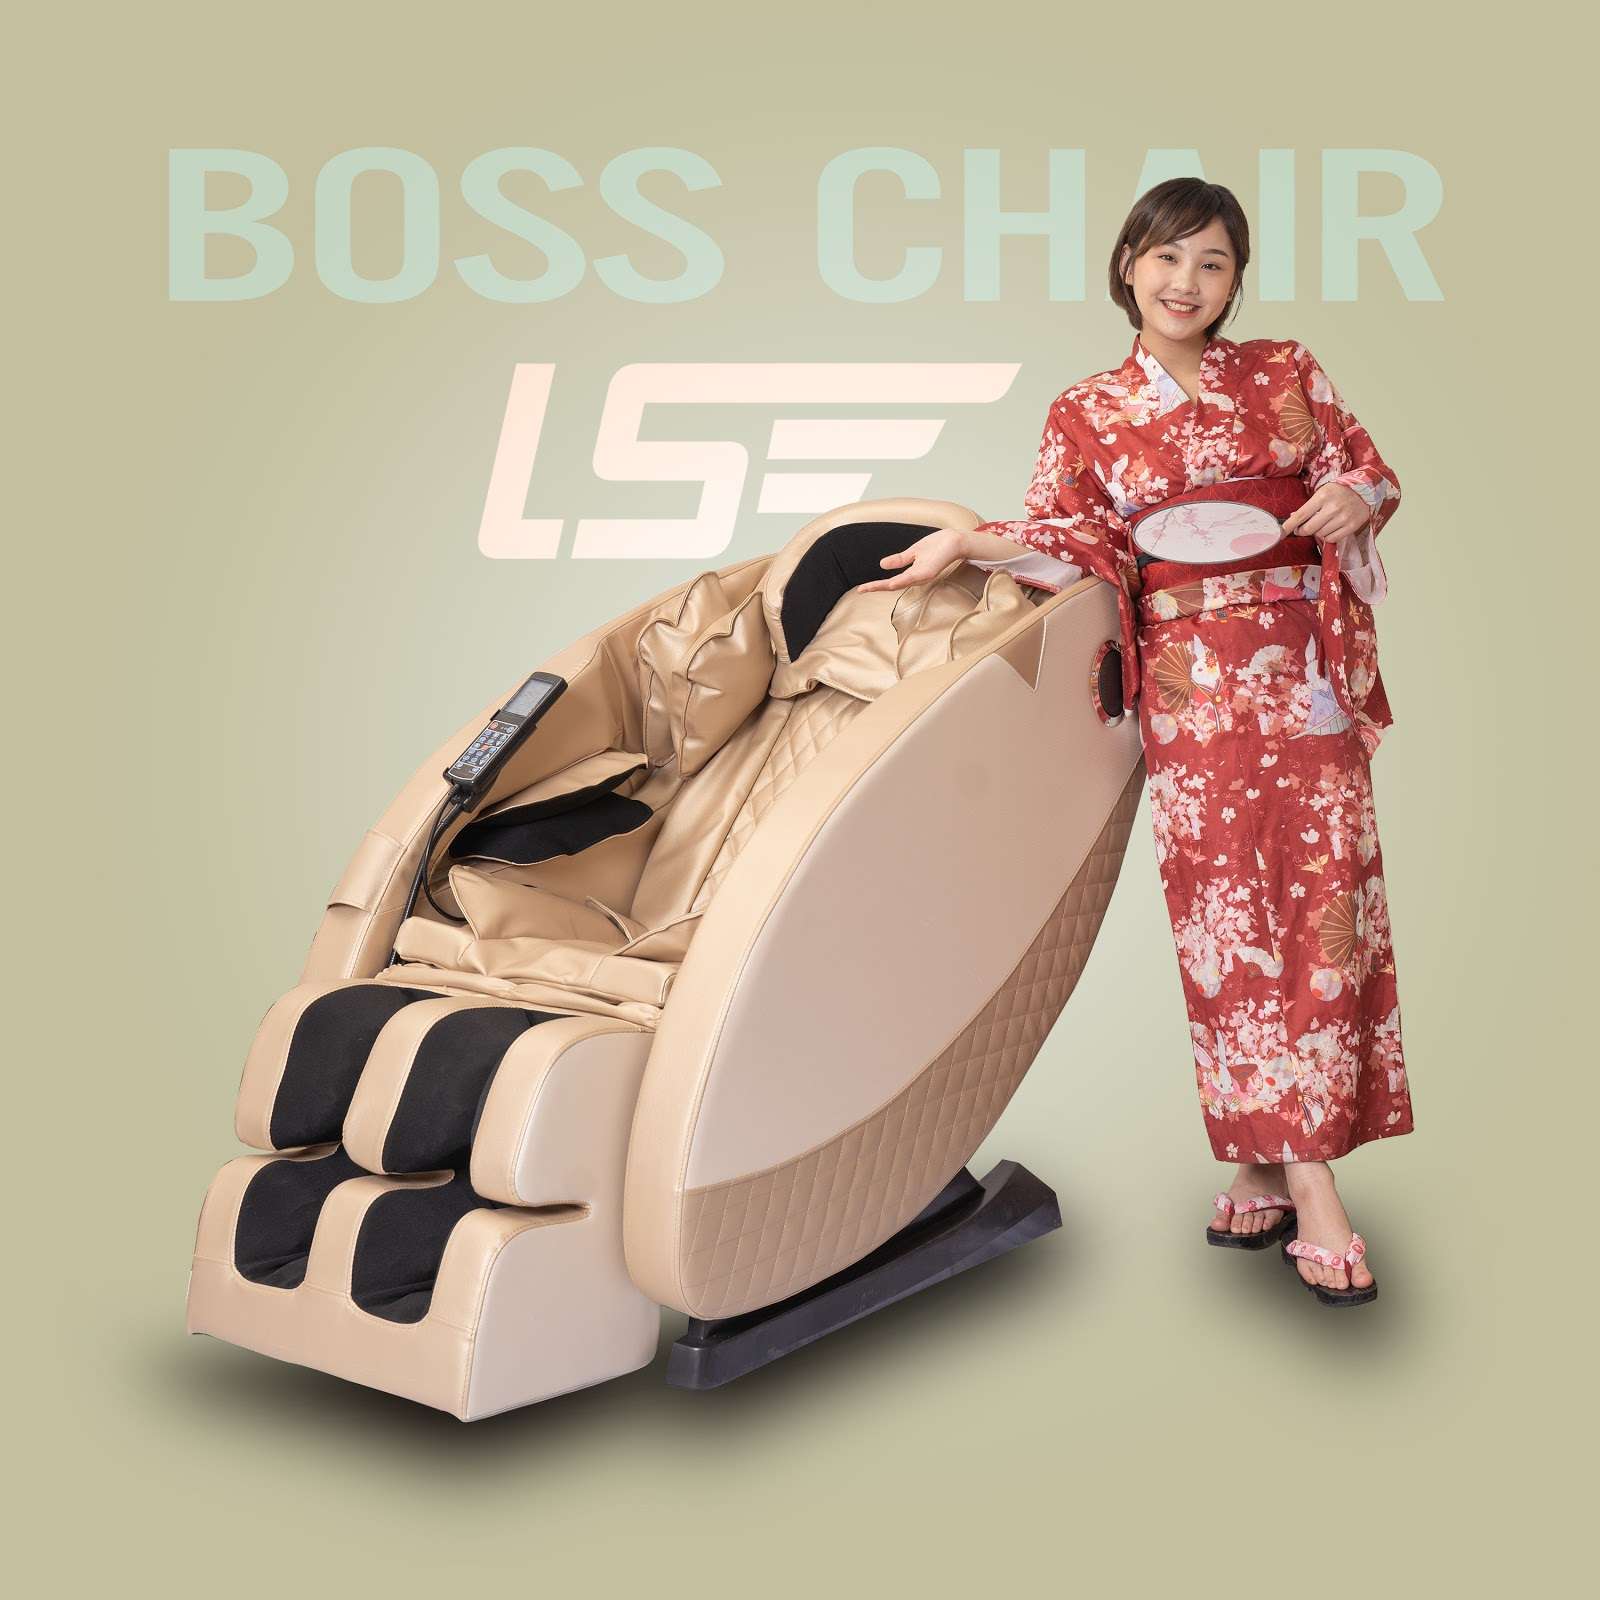 Ghế massage Boss Chair - sức khỏe trọn vẹn cho mọi gia đình - 2